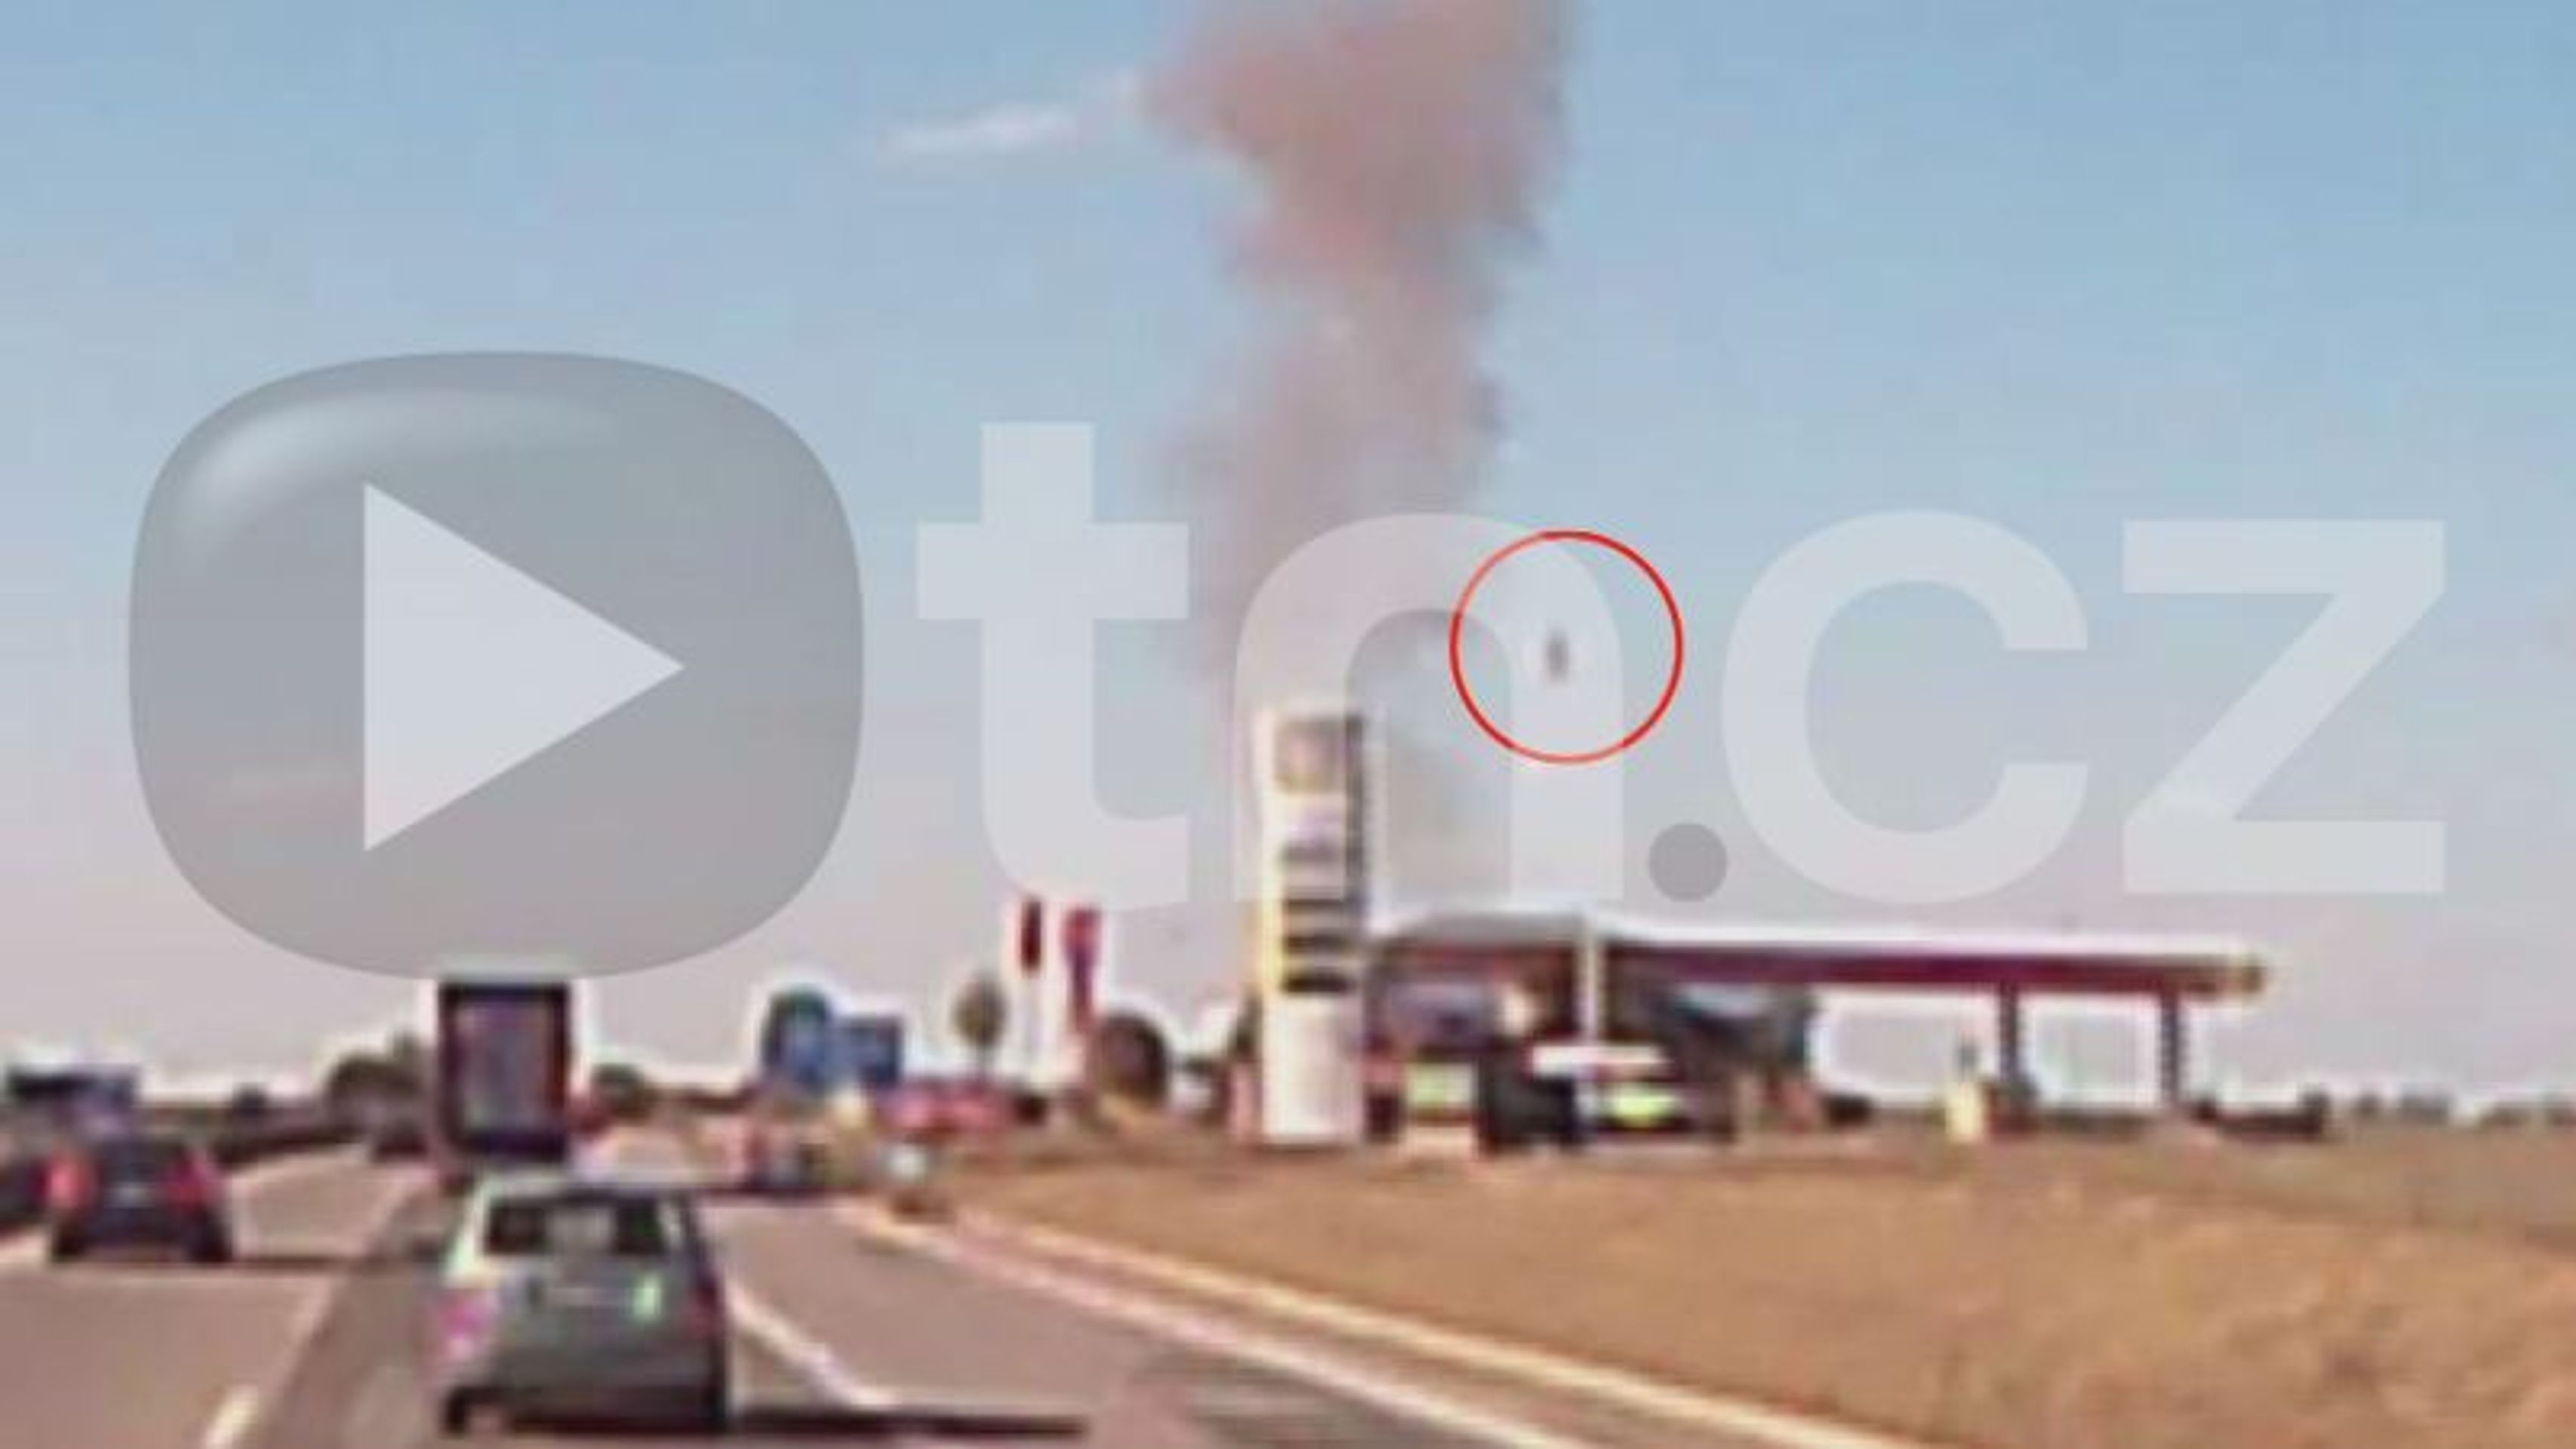 Výbuch čerpací stanice Zdiby 3 - GALERIE: Exploze čerpací stanice ve Zdibech (3/8)